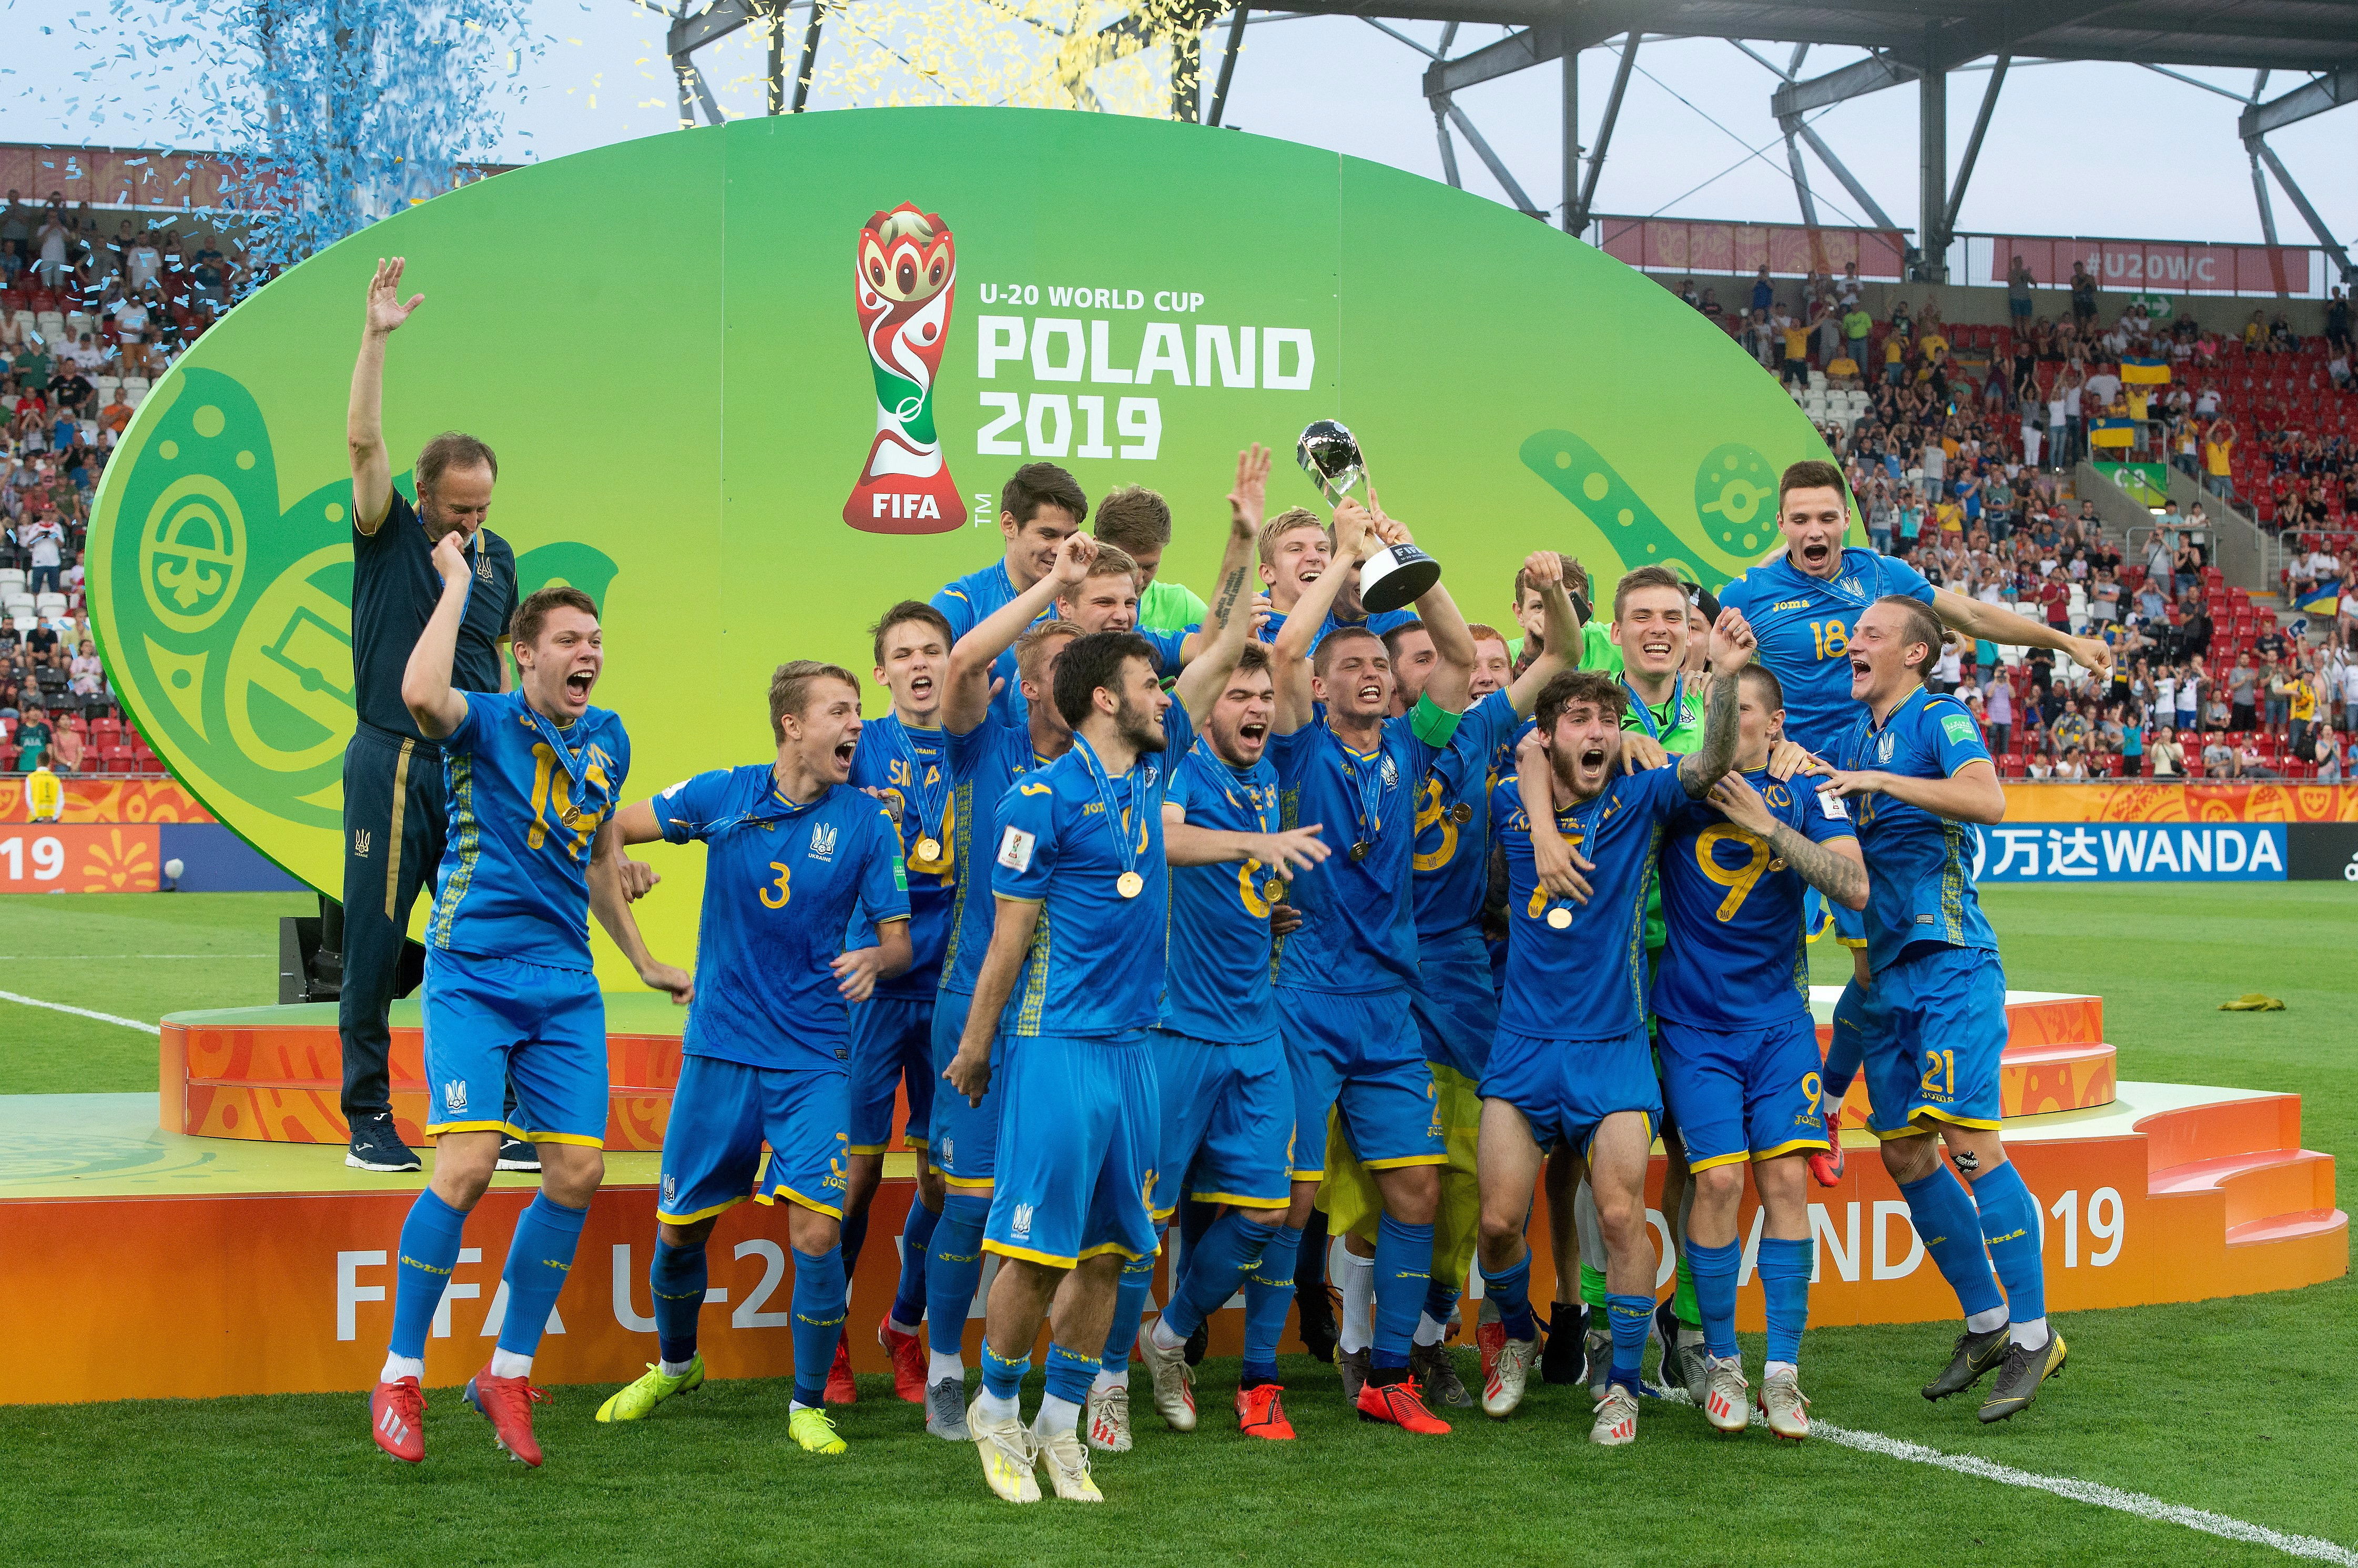 La Selección de Ucrania hizo historia este sábado, después de haber conquistado el Mundial Sub 20. (Foto Prensa Libre: EFE).